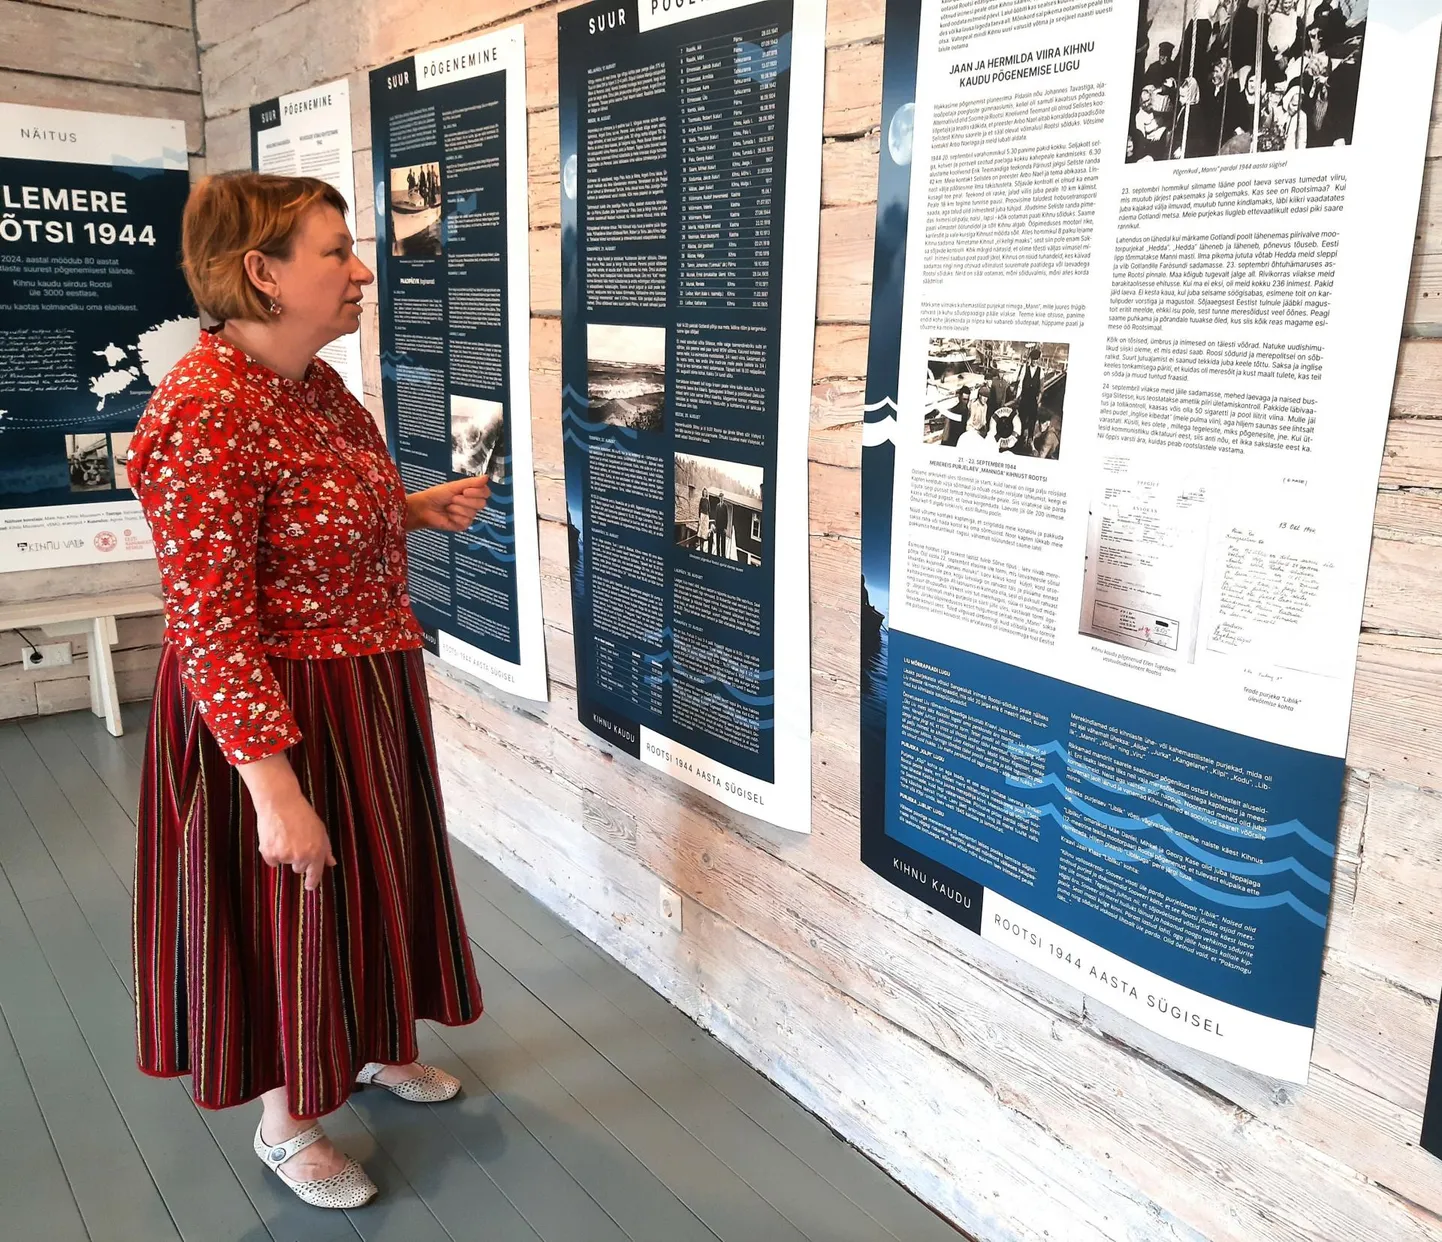 "Siin on näiteks purjelaevaga Mann Kihnust Rootsi alanud üle 200 reisijaga teekonna kirjeldus," viitab Kihnu muuseumi juhataja-varahoidja Maie Aav näitusesaalis stendi ees.